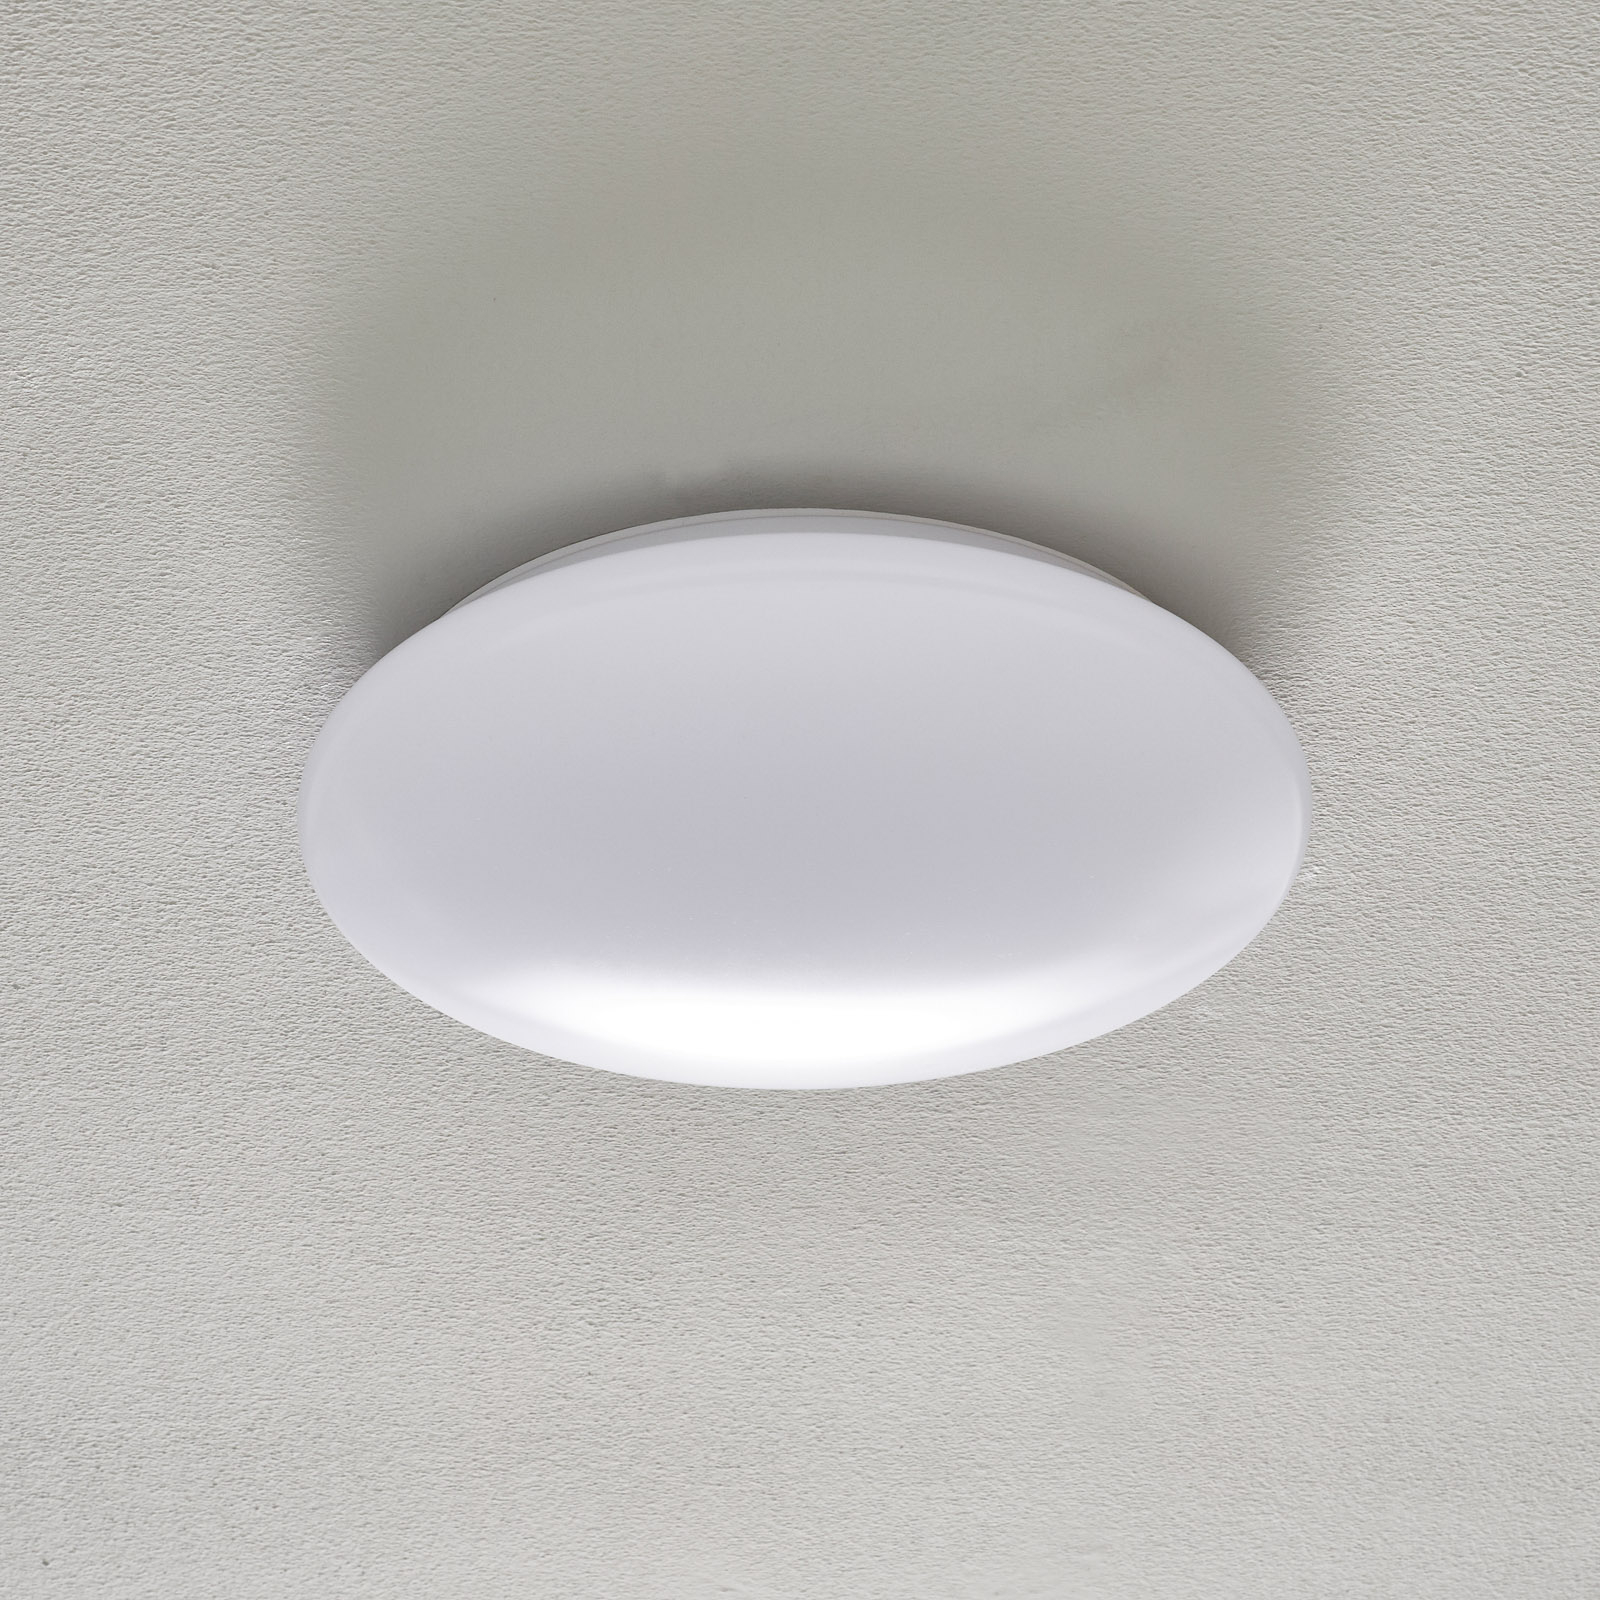 Porz LED ceiling light IP44 HF sensor, white